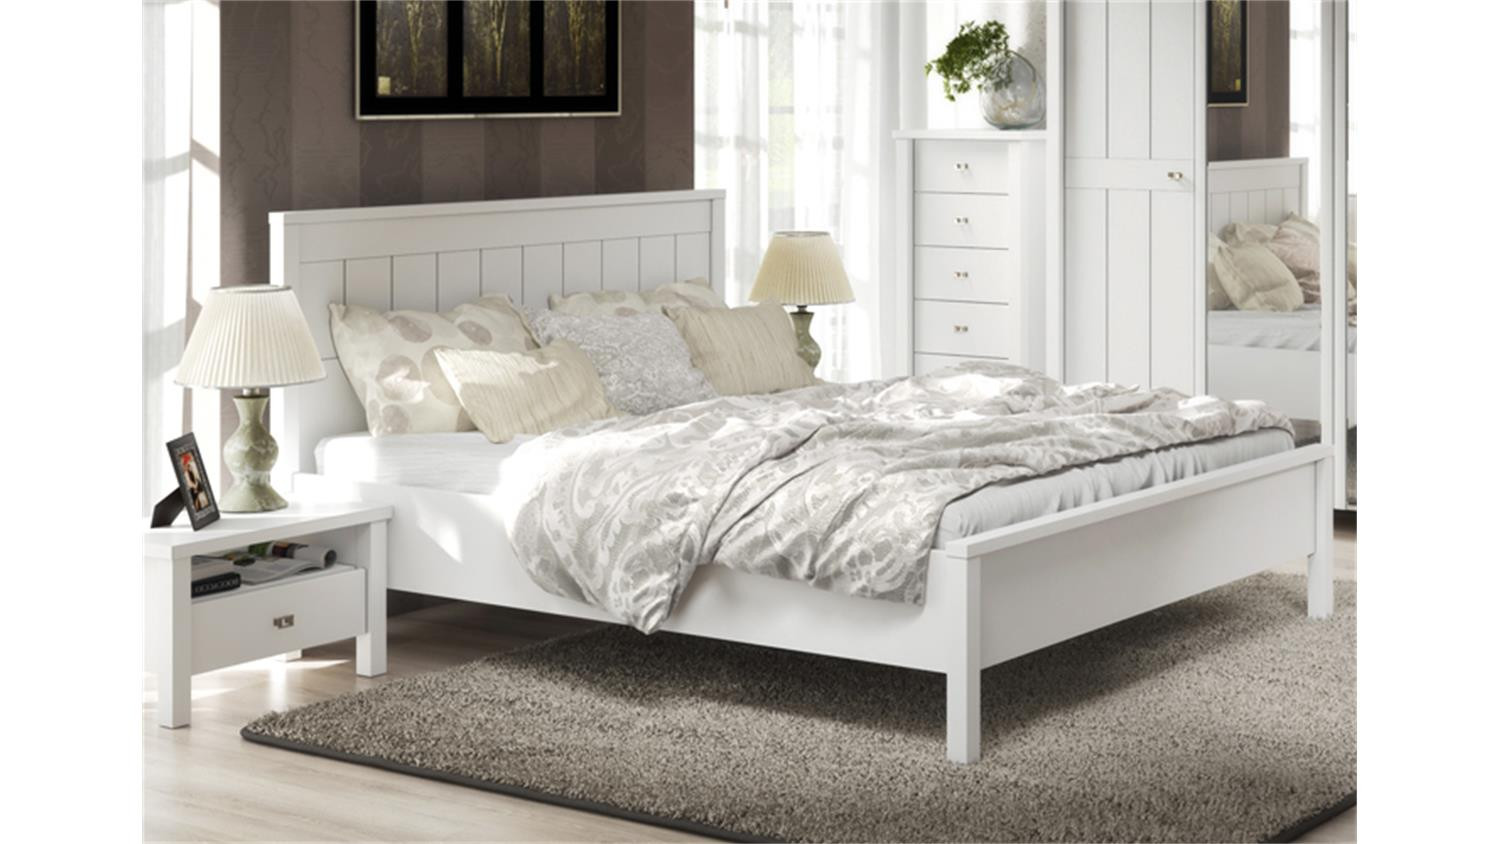 180x200 Bett
 Bett BRIGHTON in weiß super matt Landhaus Style 180x200